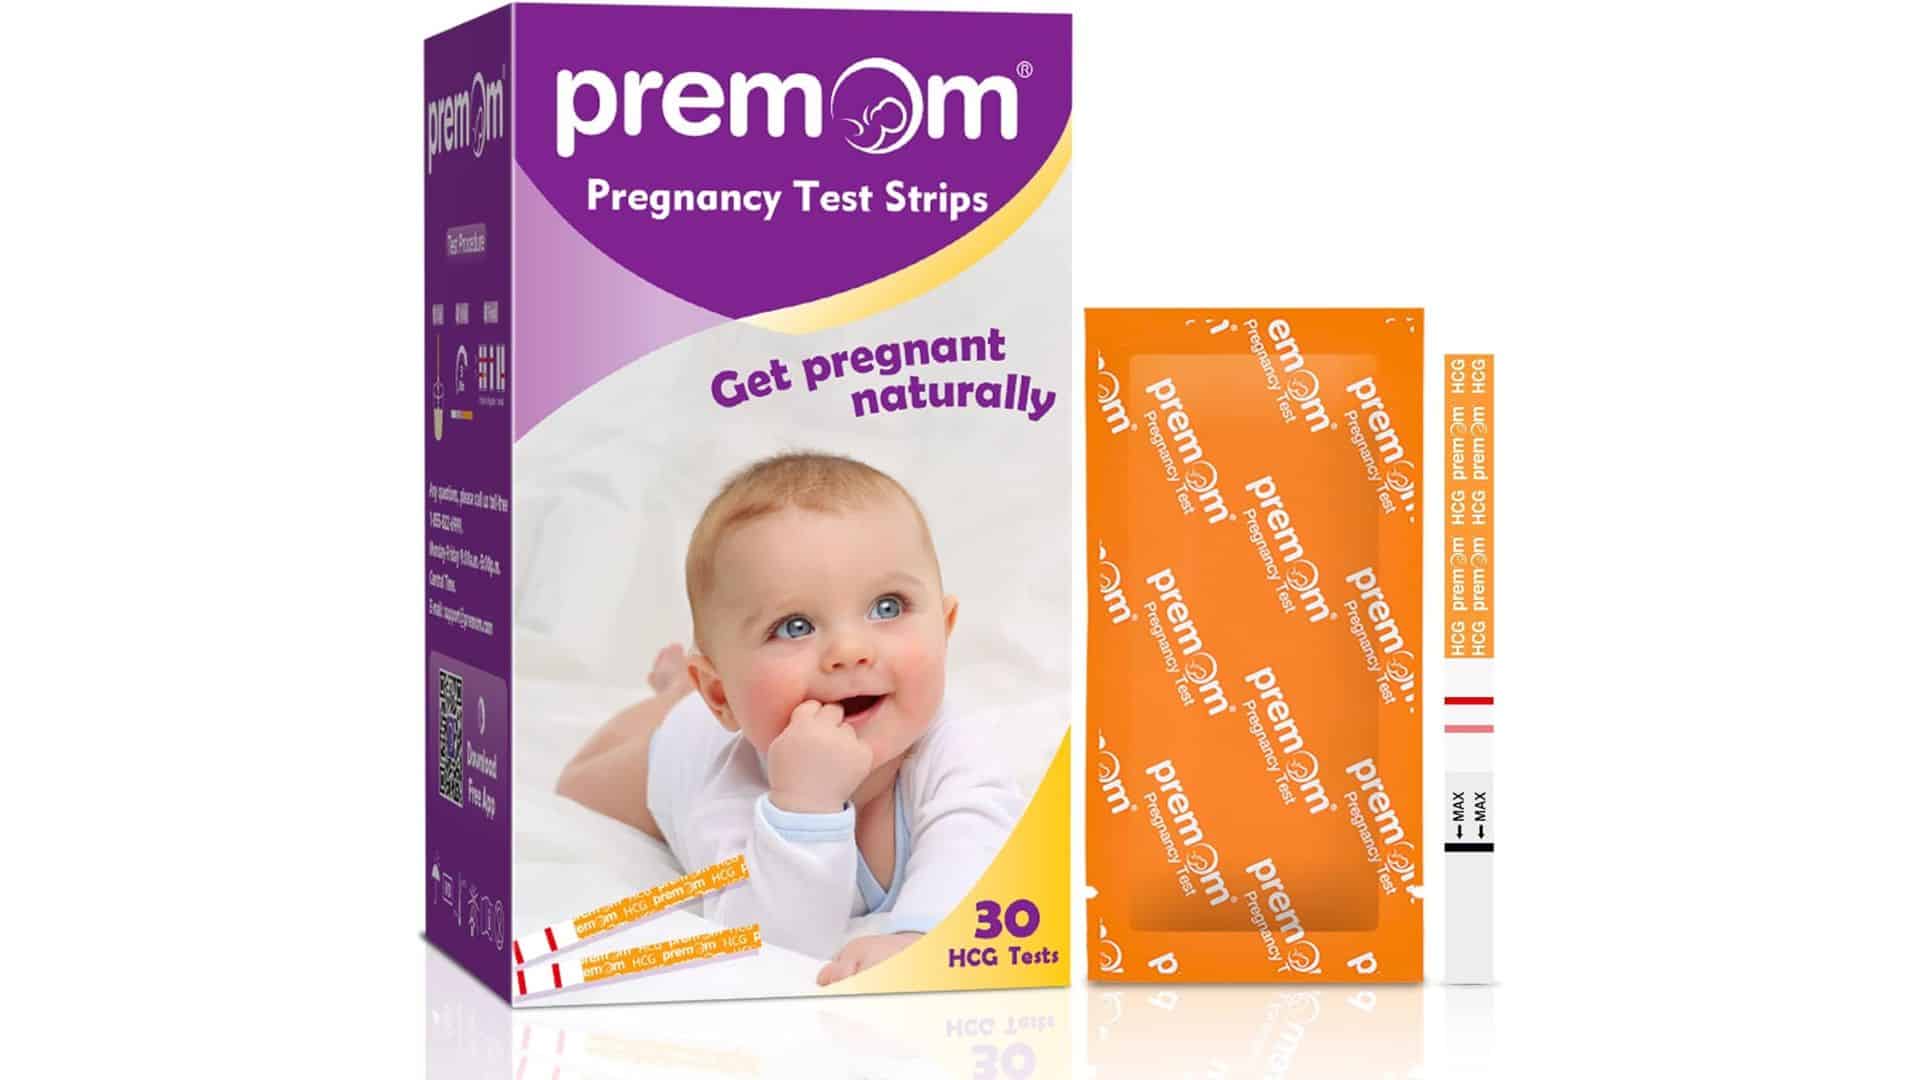 Premom Pregnancy Test Strips